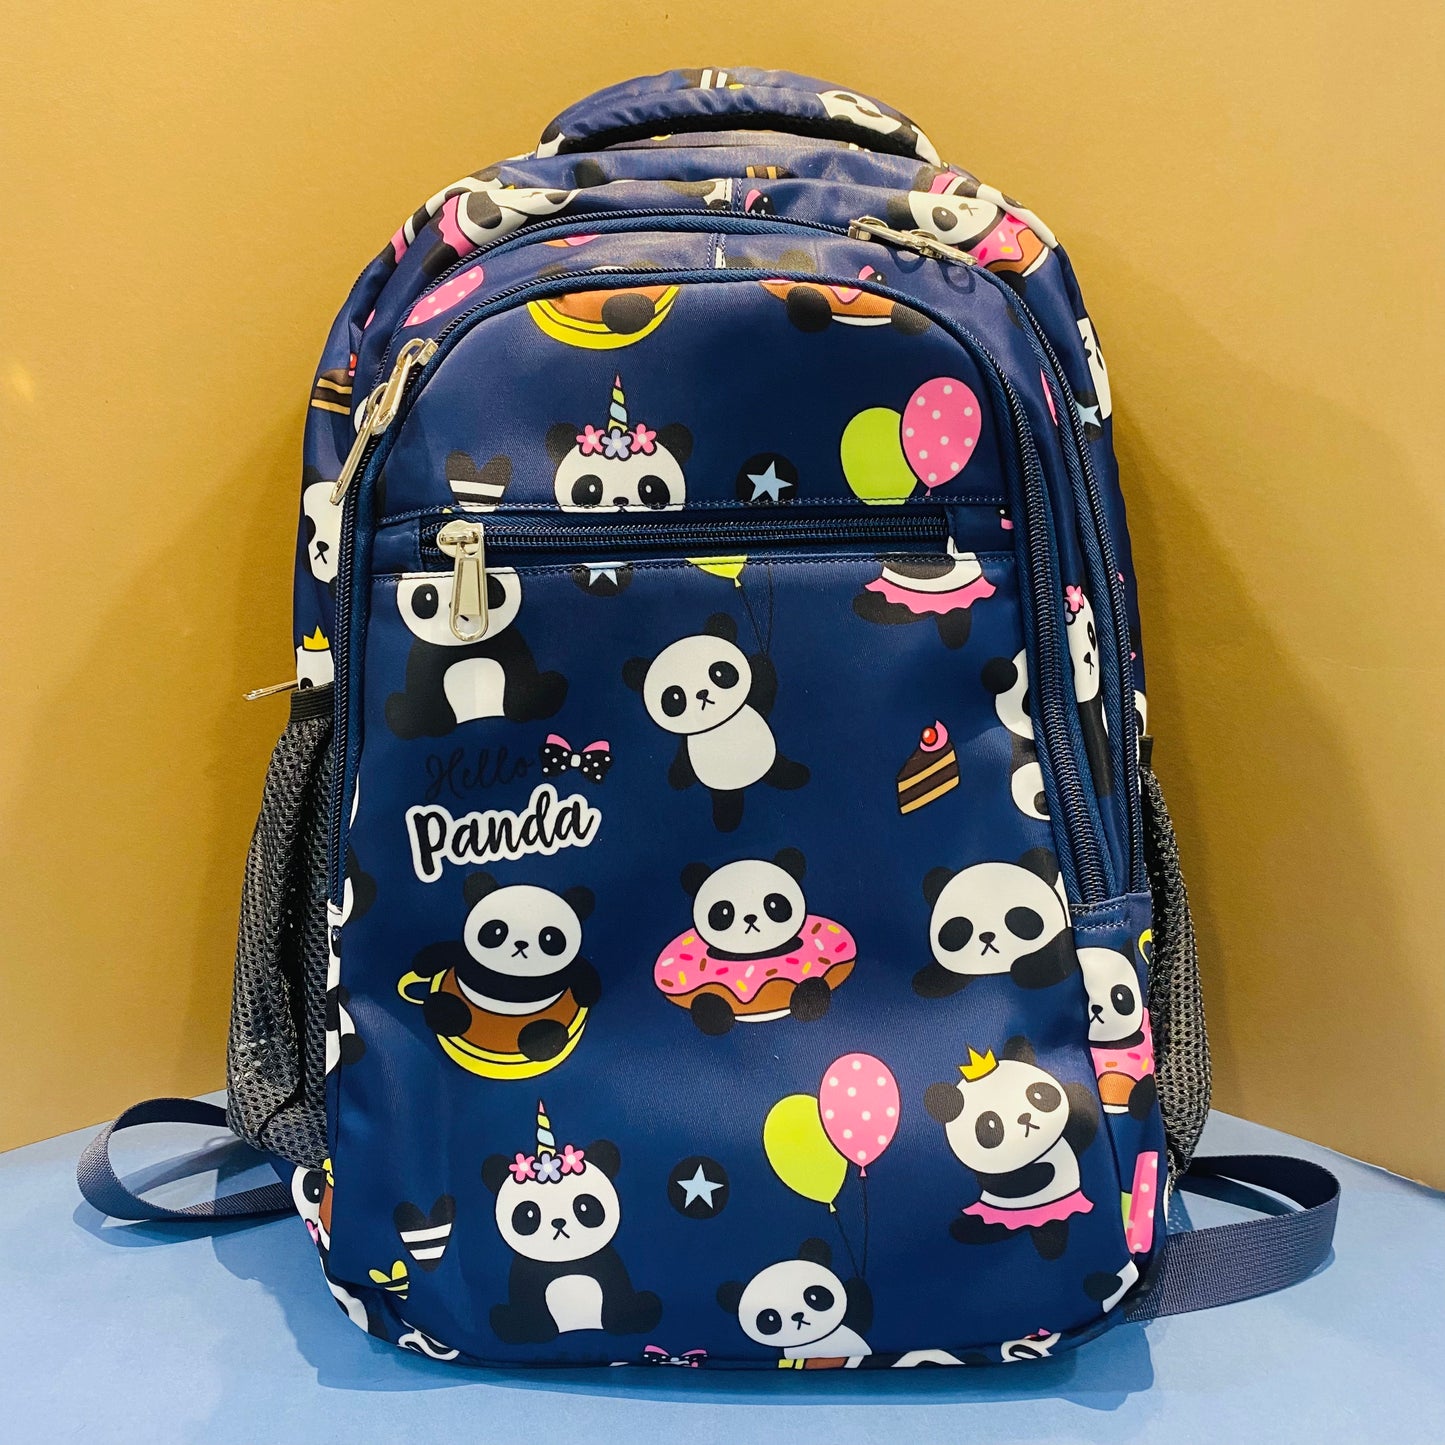 16” Premium School Bags